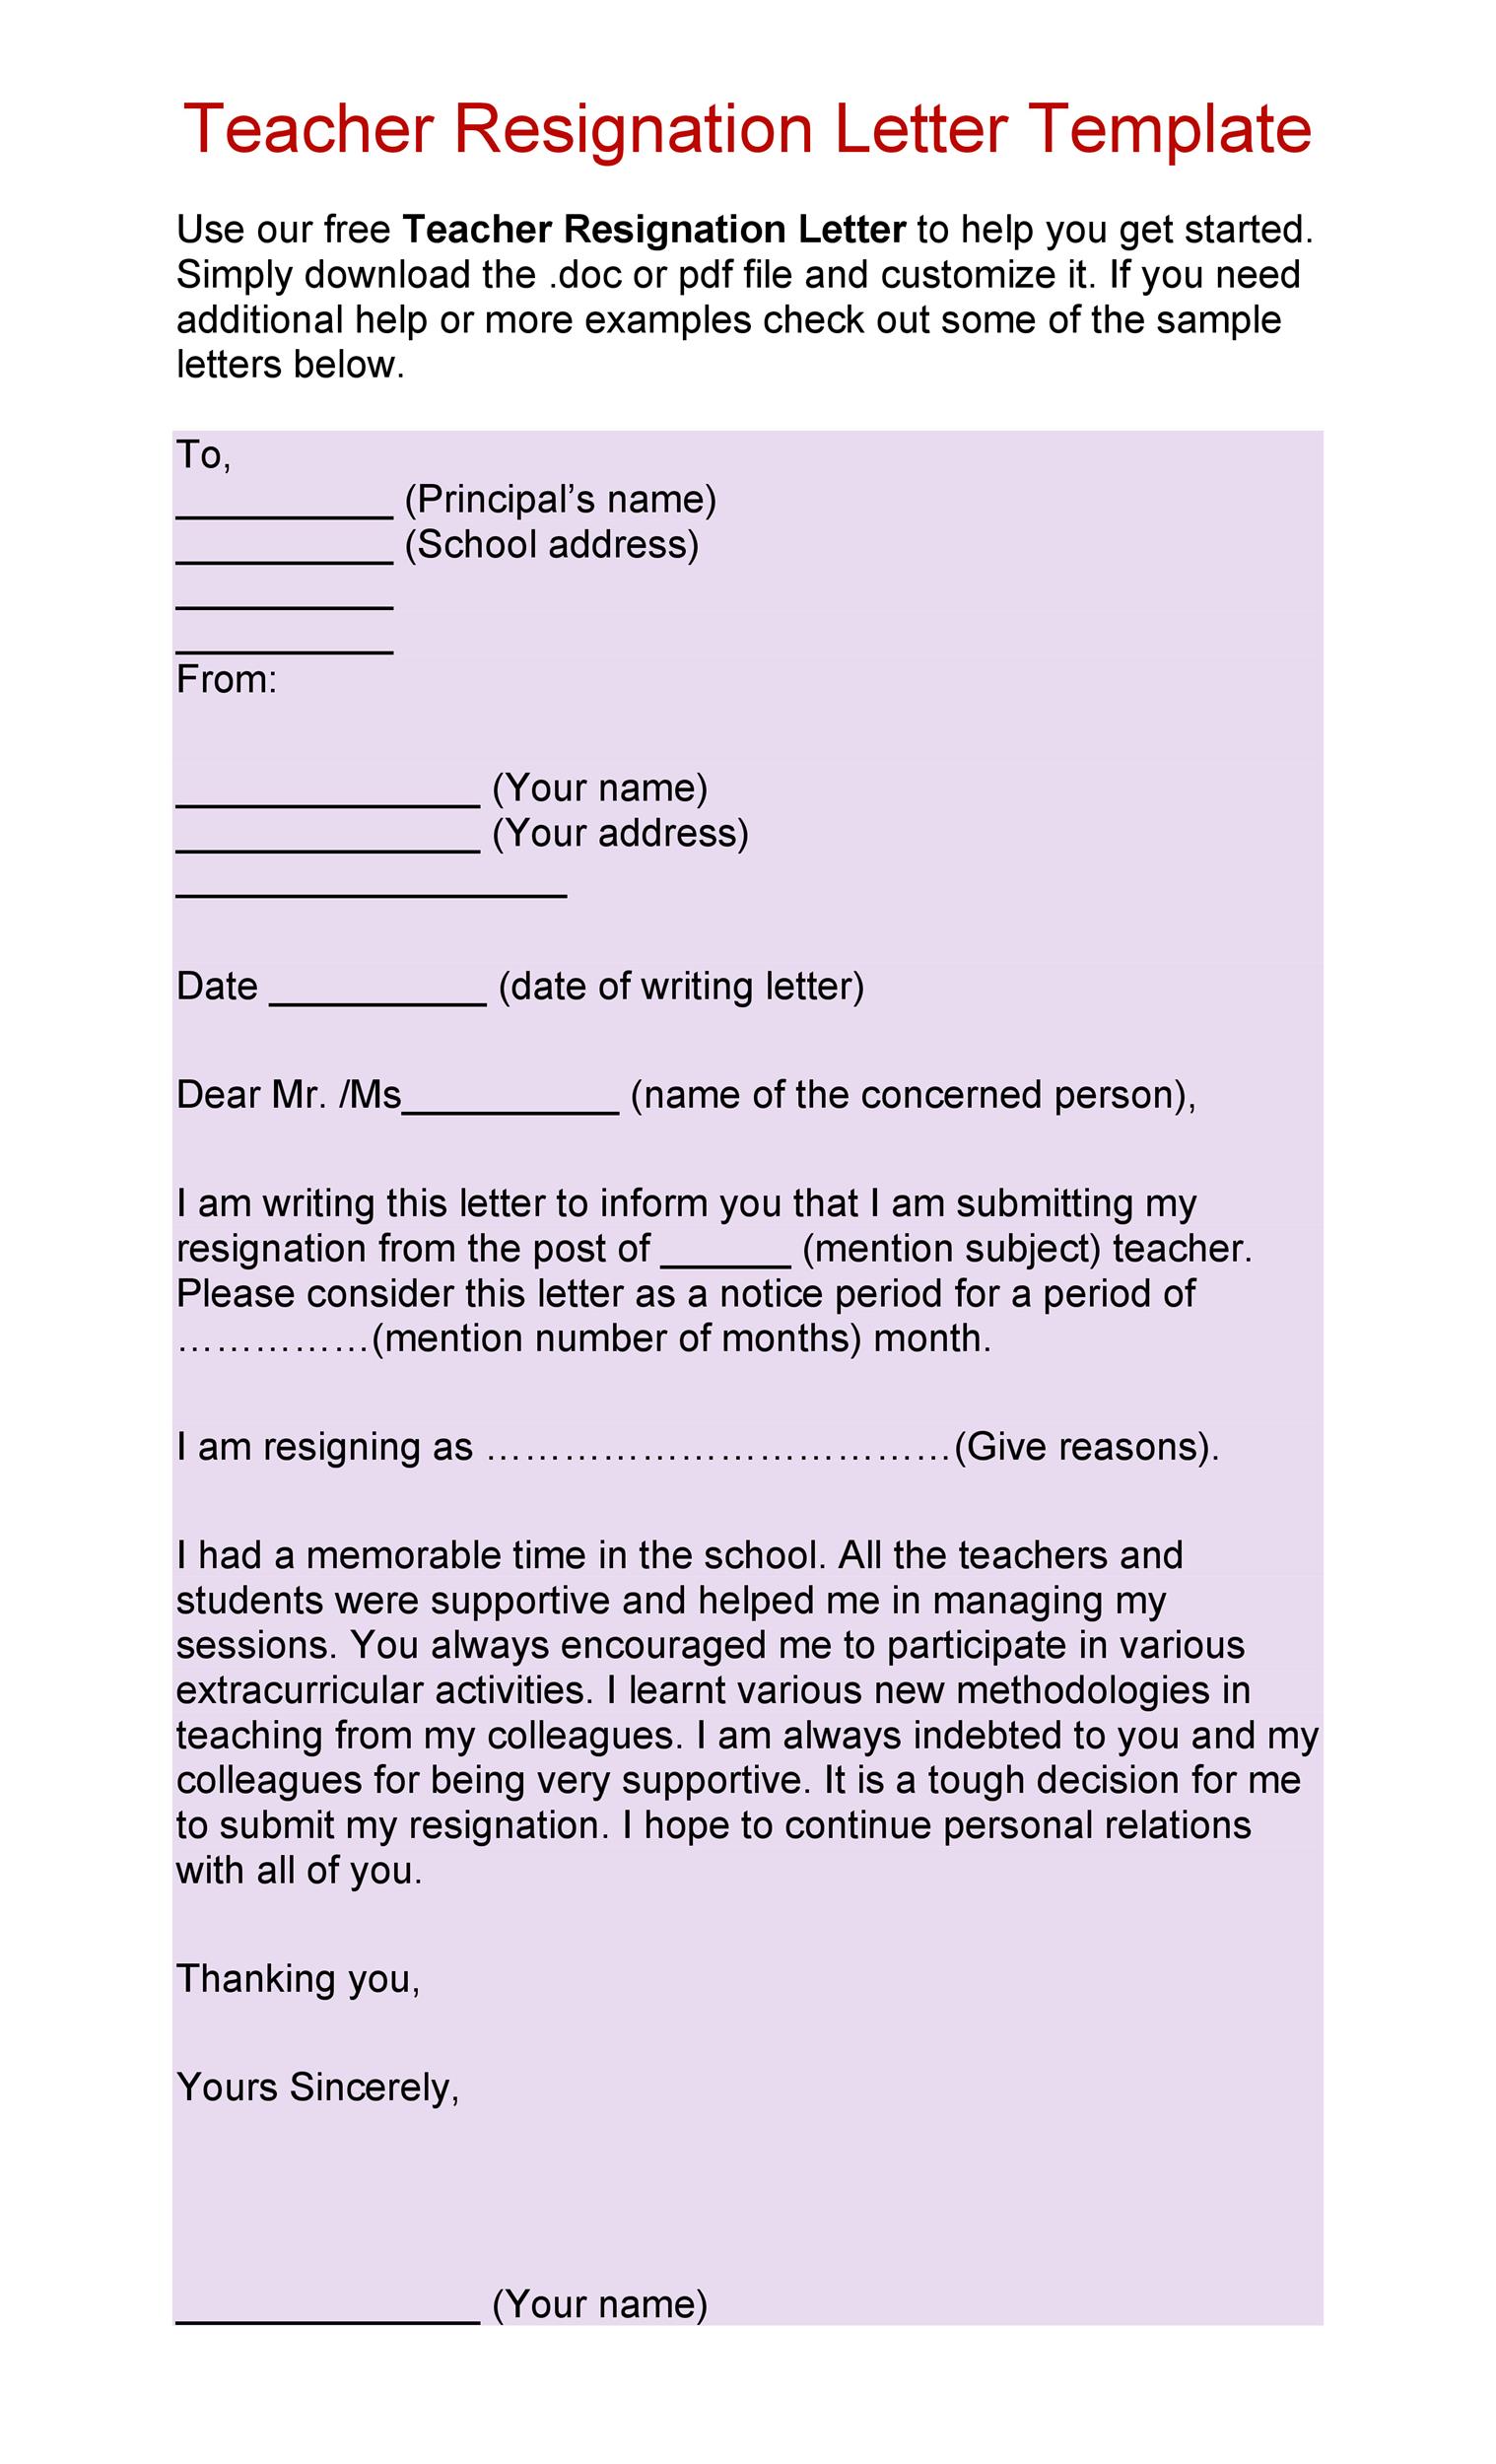 Free teacher resignation letter 11